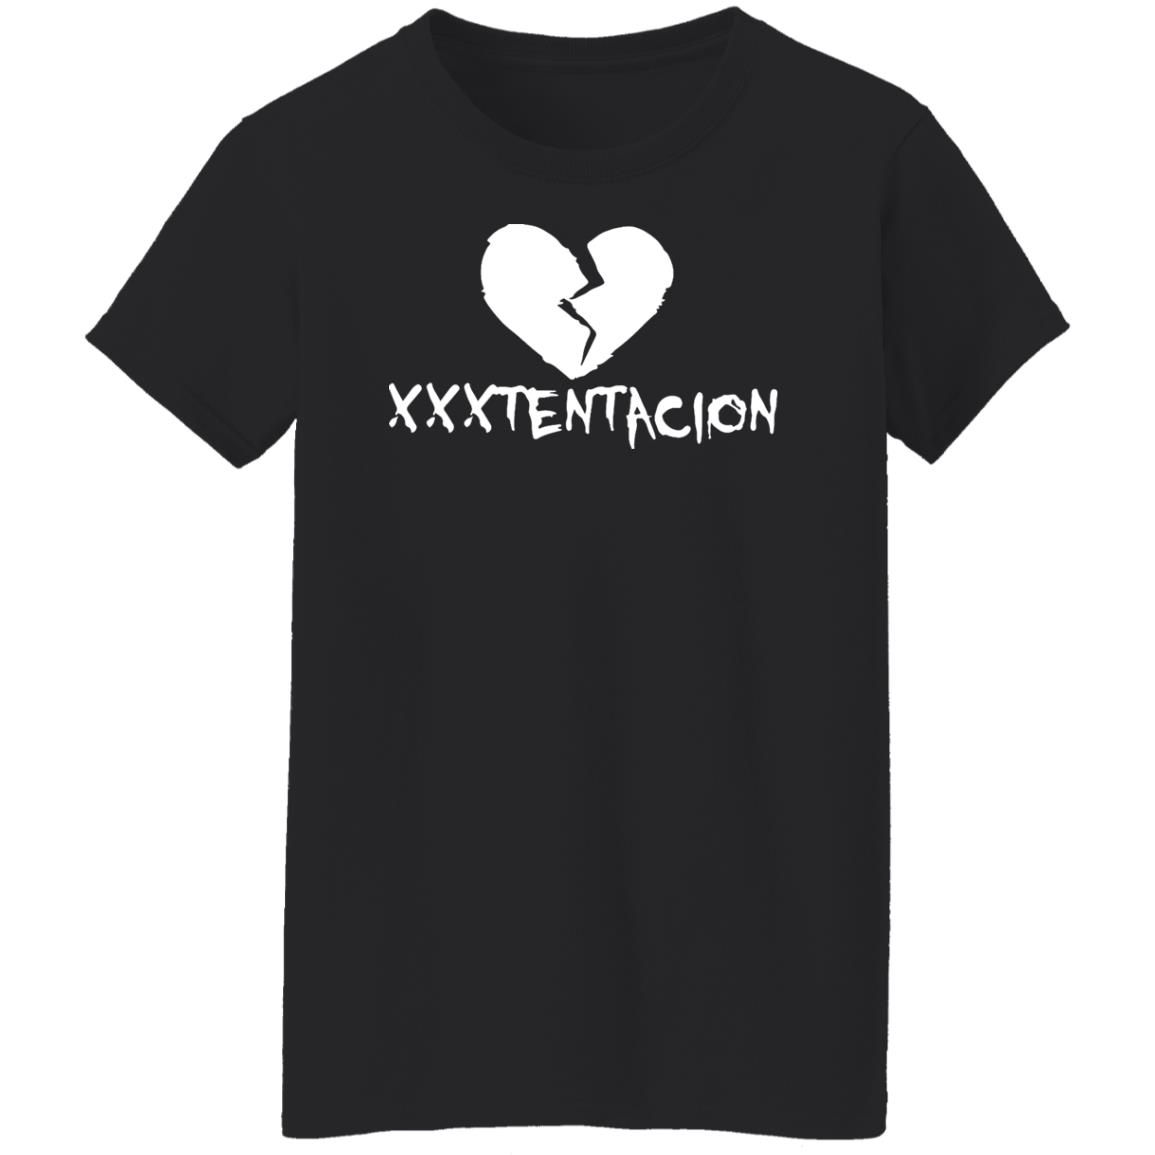 Official Vibration: Xxxtentacion's Exclusive Merch Store